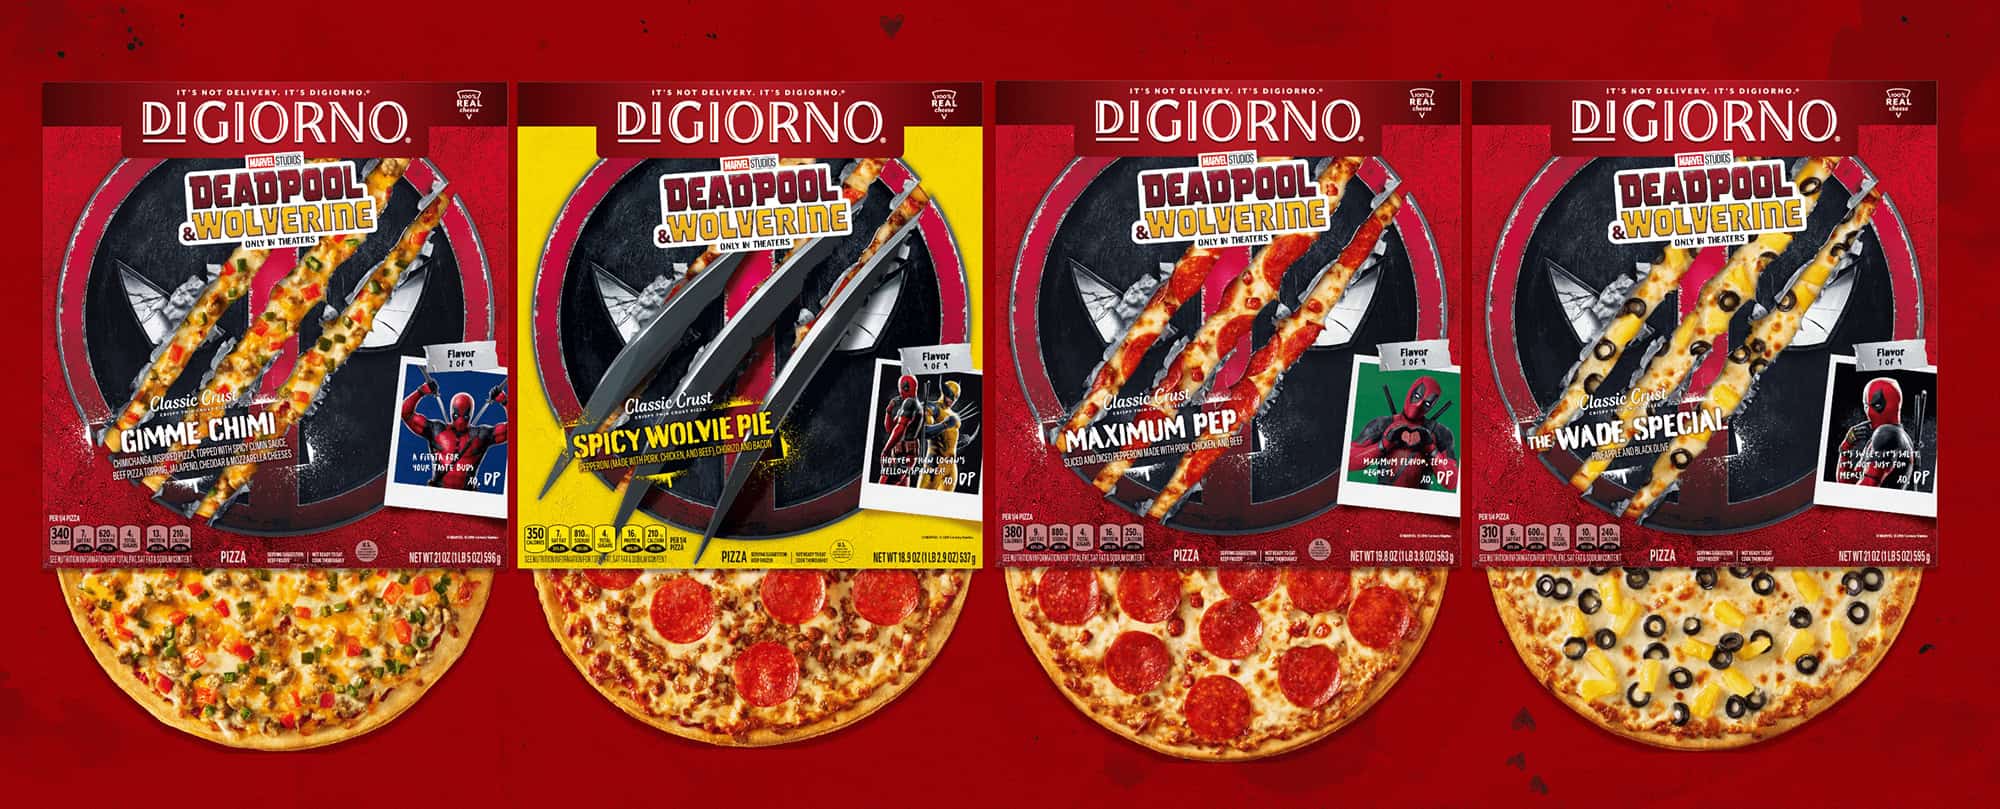 Deadpool & Wolverine, DiGiorno Pizza